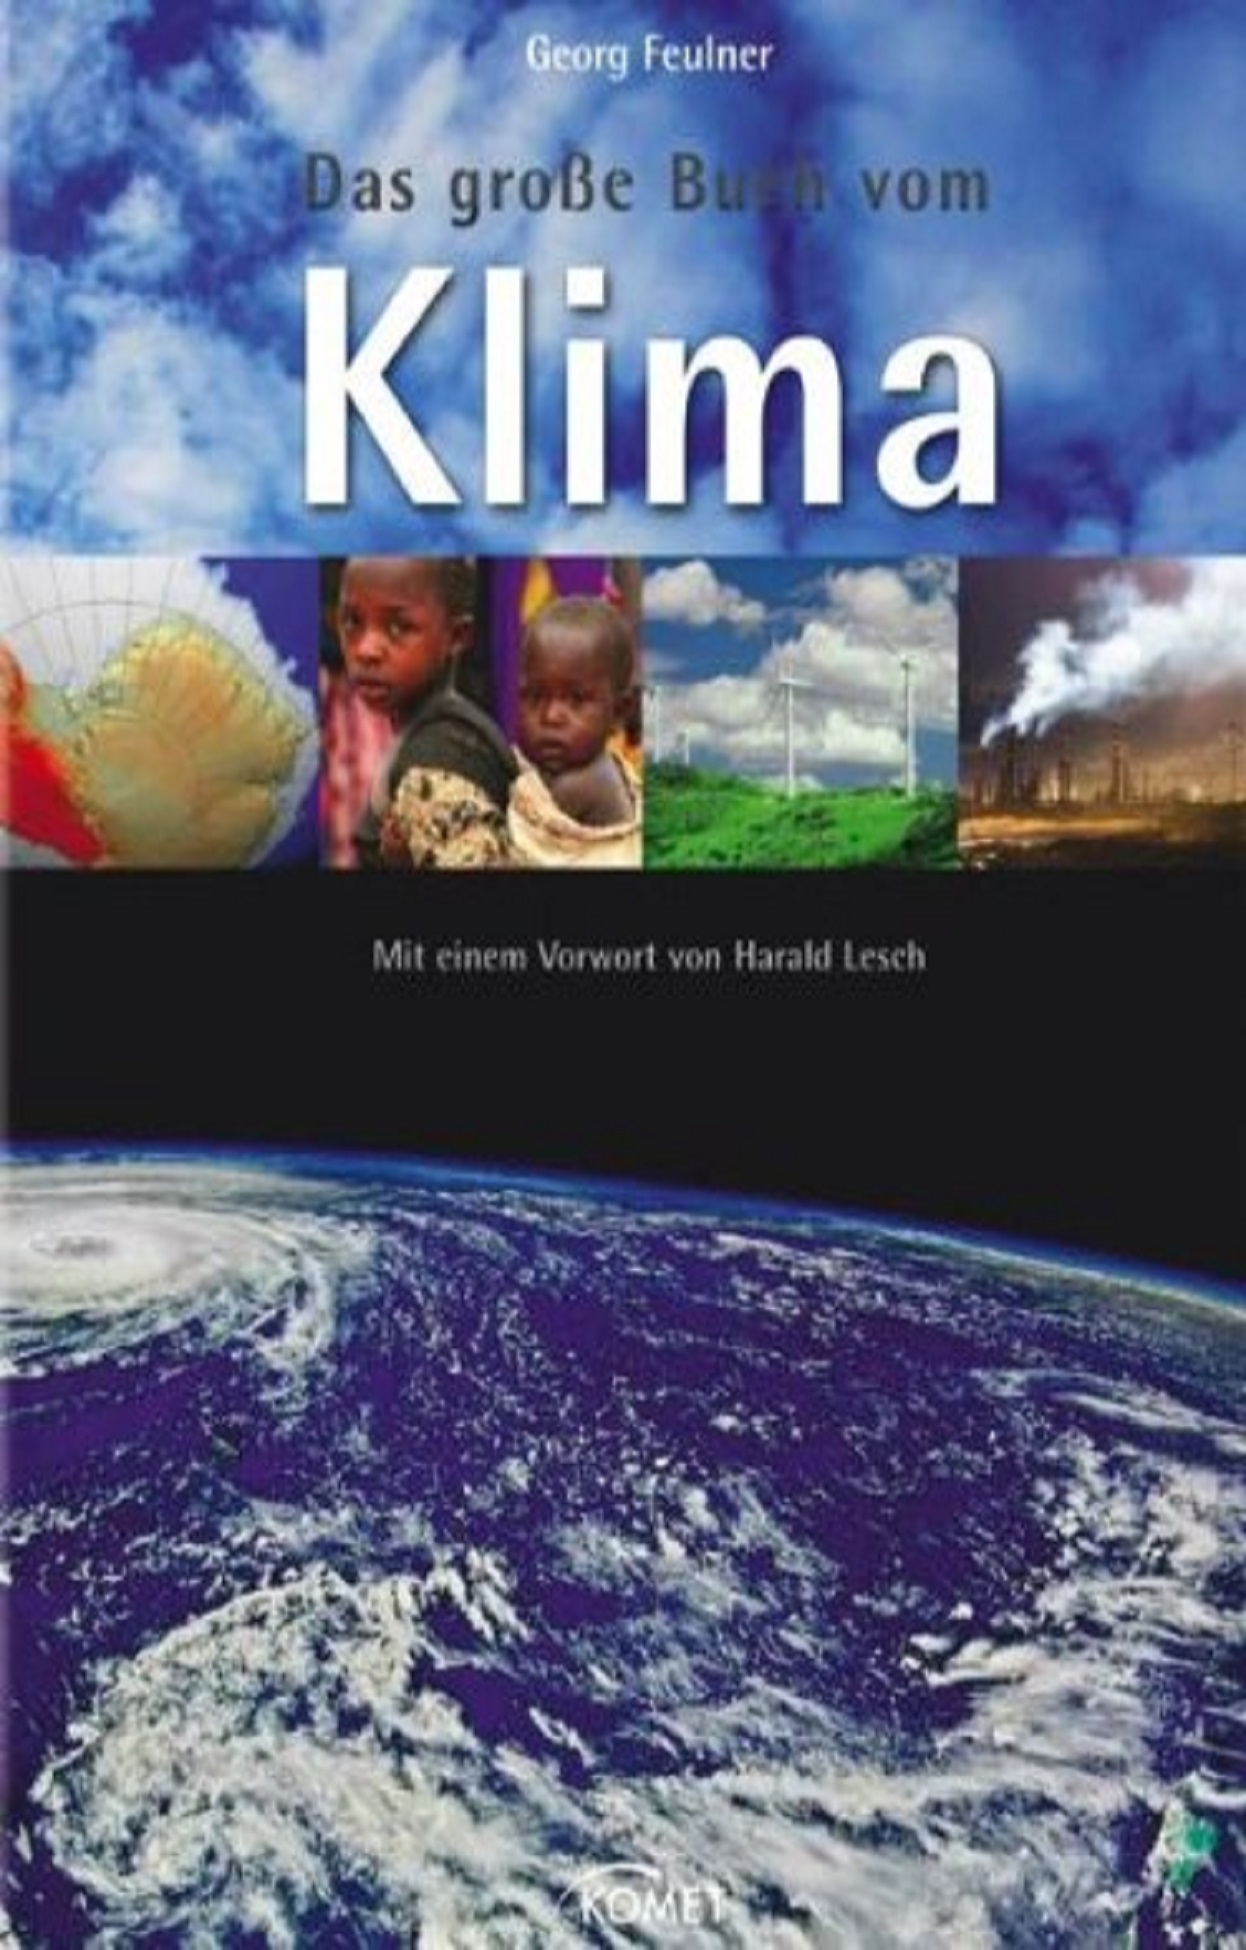 "Das große Buch vom Klima"